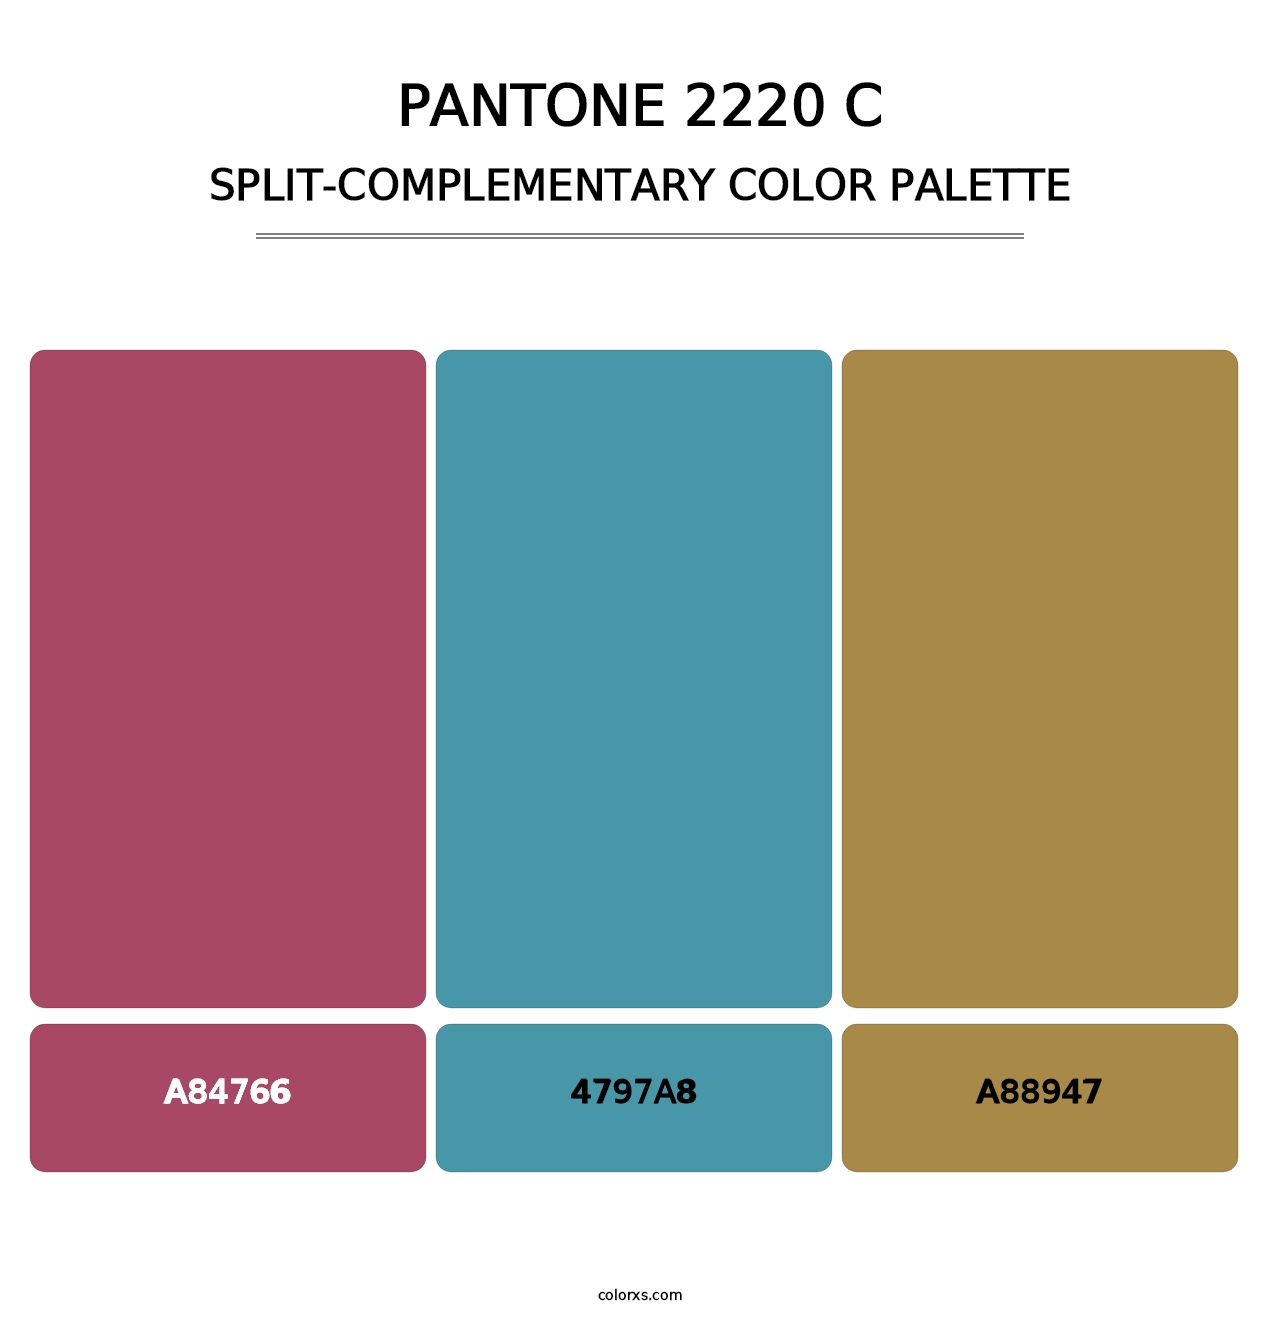 PANTONE 2220 C - Split-Complementary Color Palette